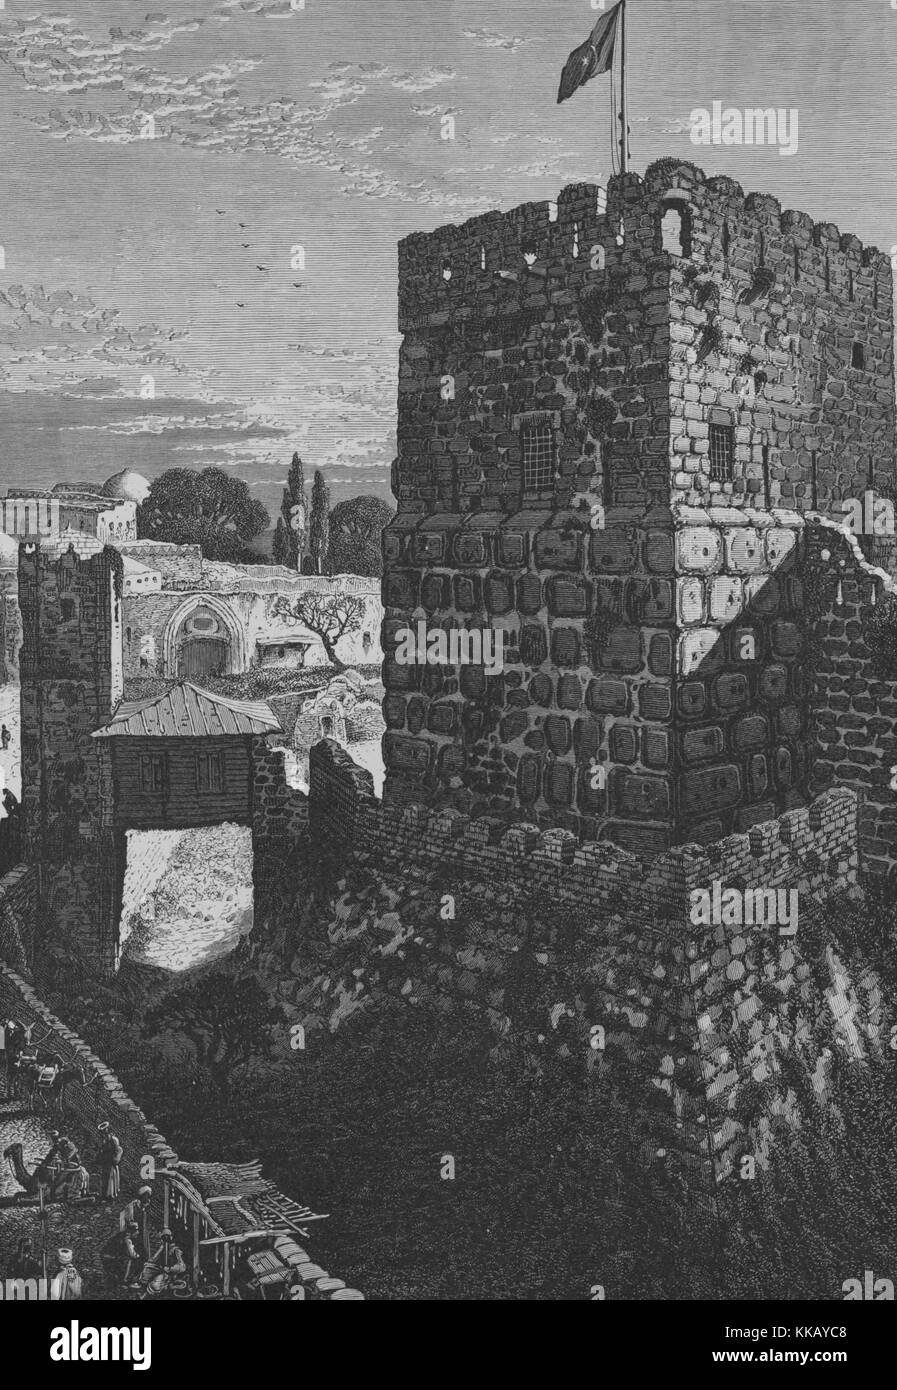 Une gravure représentant la Tour de David, il est également connu comme la citadelle de Jérusalem, un pont peut être vu le pas sur les douves qui entoure la structure, il est construit sur le site d'autres anciennes fortifications datant du 1er siècle, il a été le site de nombreux conflits au cours des siècles et construit en grande partie sur par les croisés pour protéger les chrétiens le chemin à Jaffa, les jardins du monastère arménien et la caserne turque peut être vu dans l'arrière-plan, Jérusalem, 1882. À partir de la Bibliothèque publique de New York. Banque D'Images